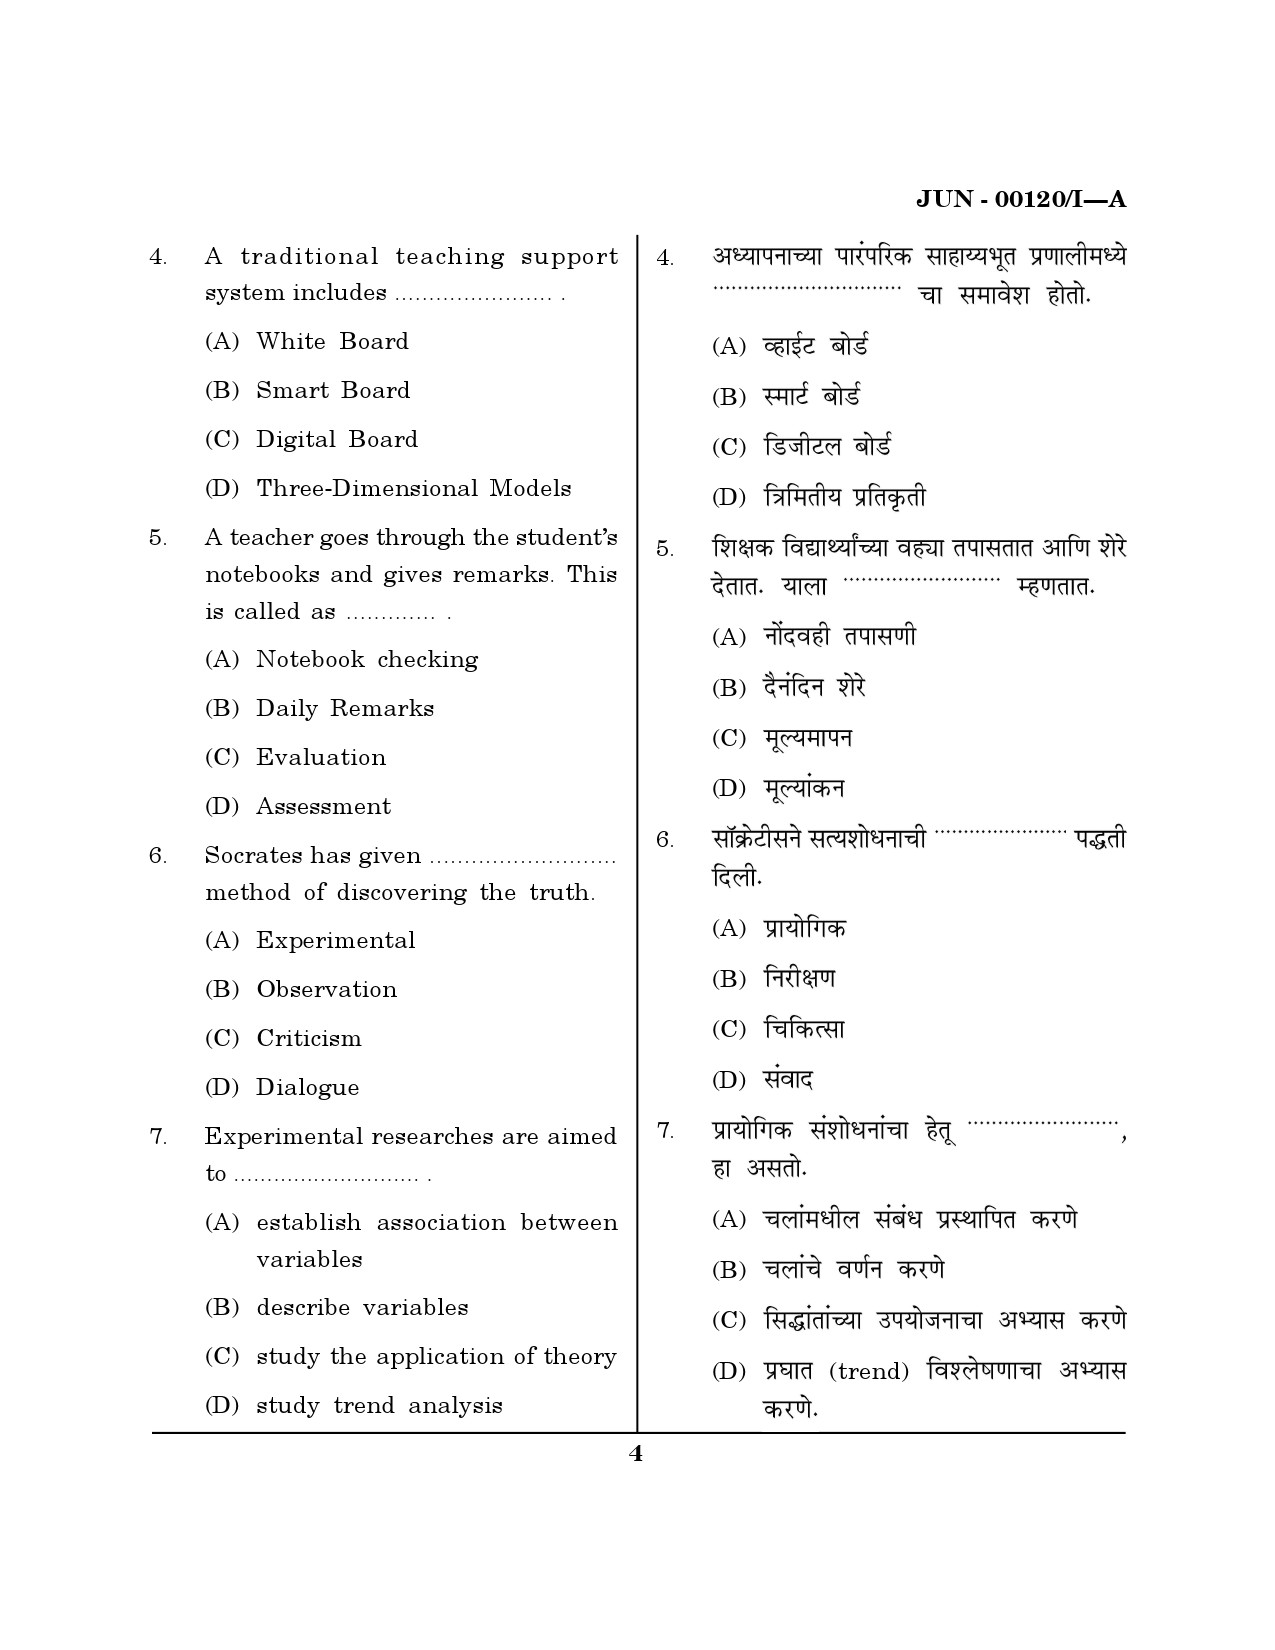 Maharashtra SET Question Paper I June 2020 3